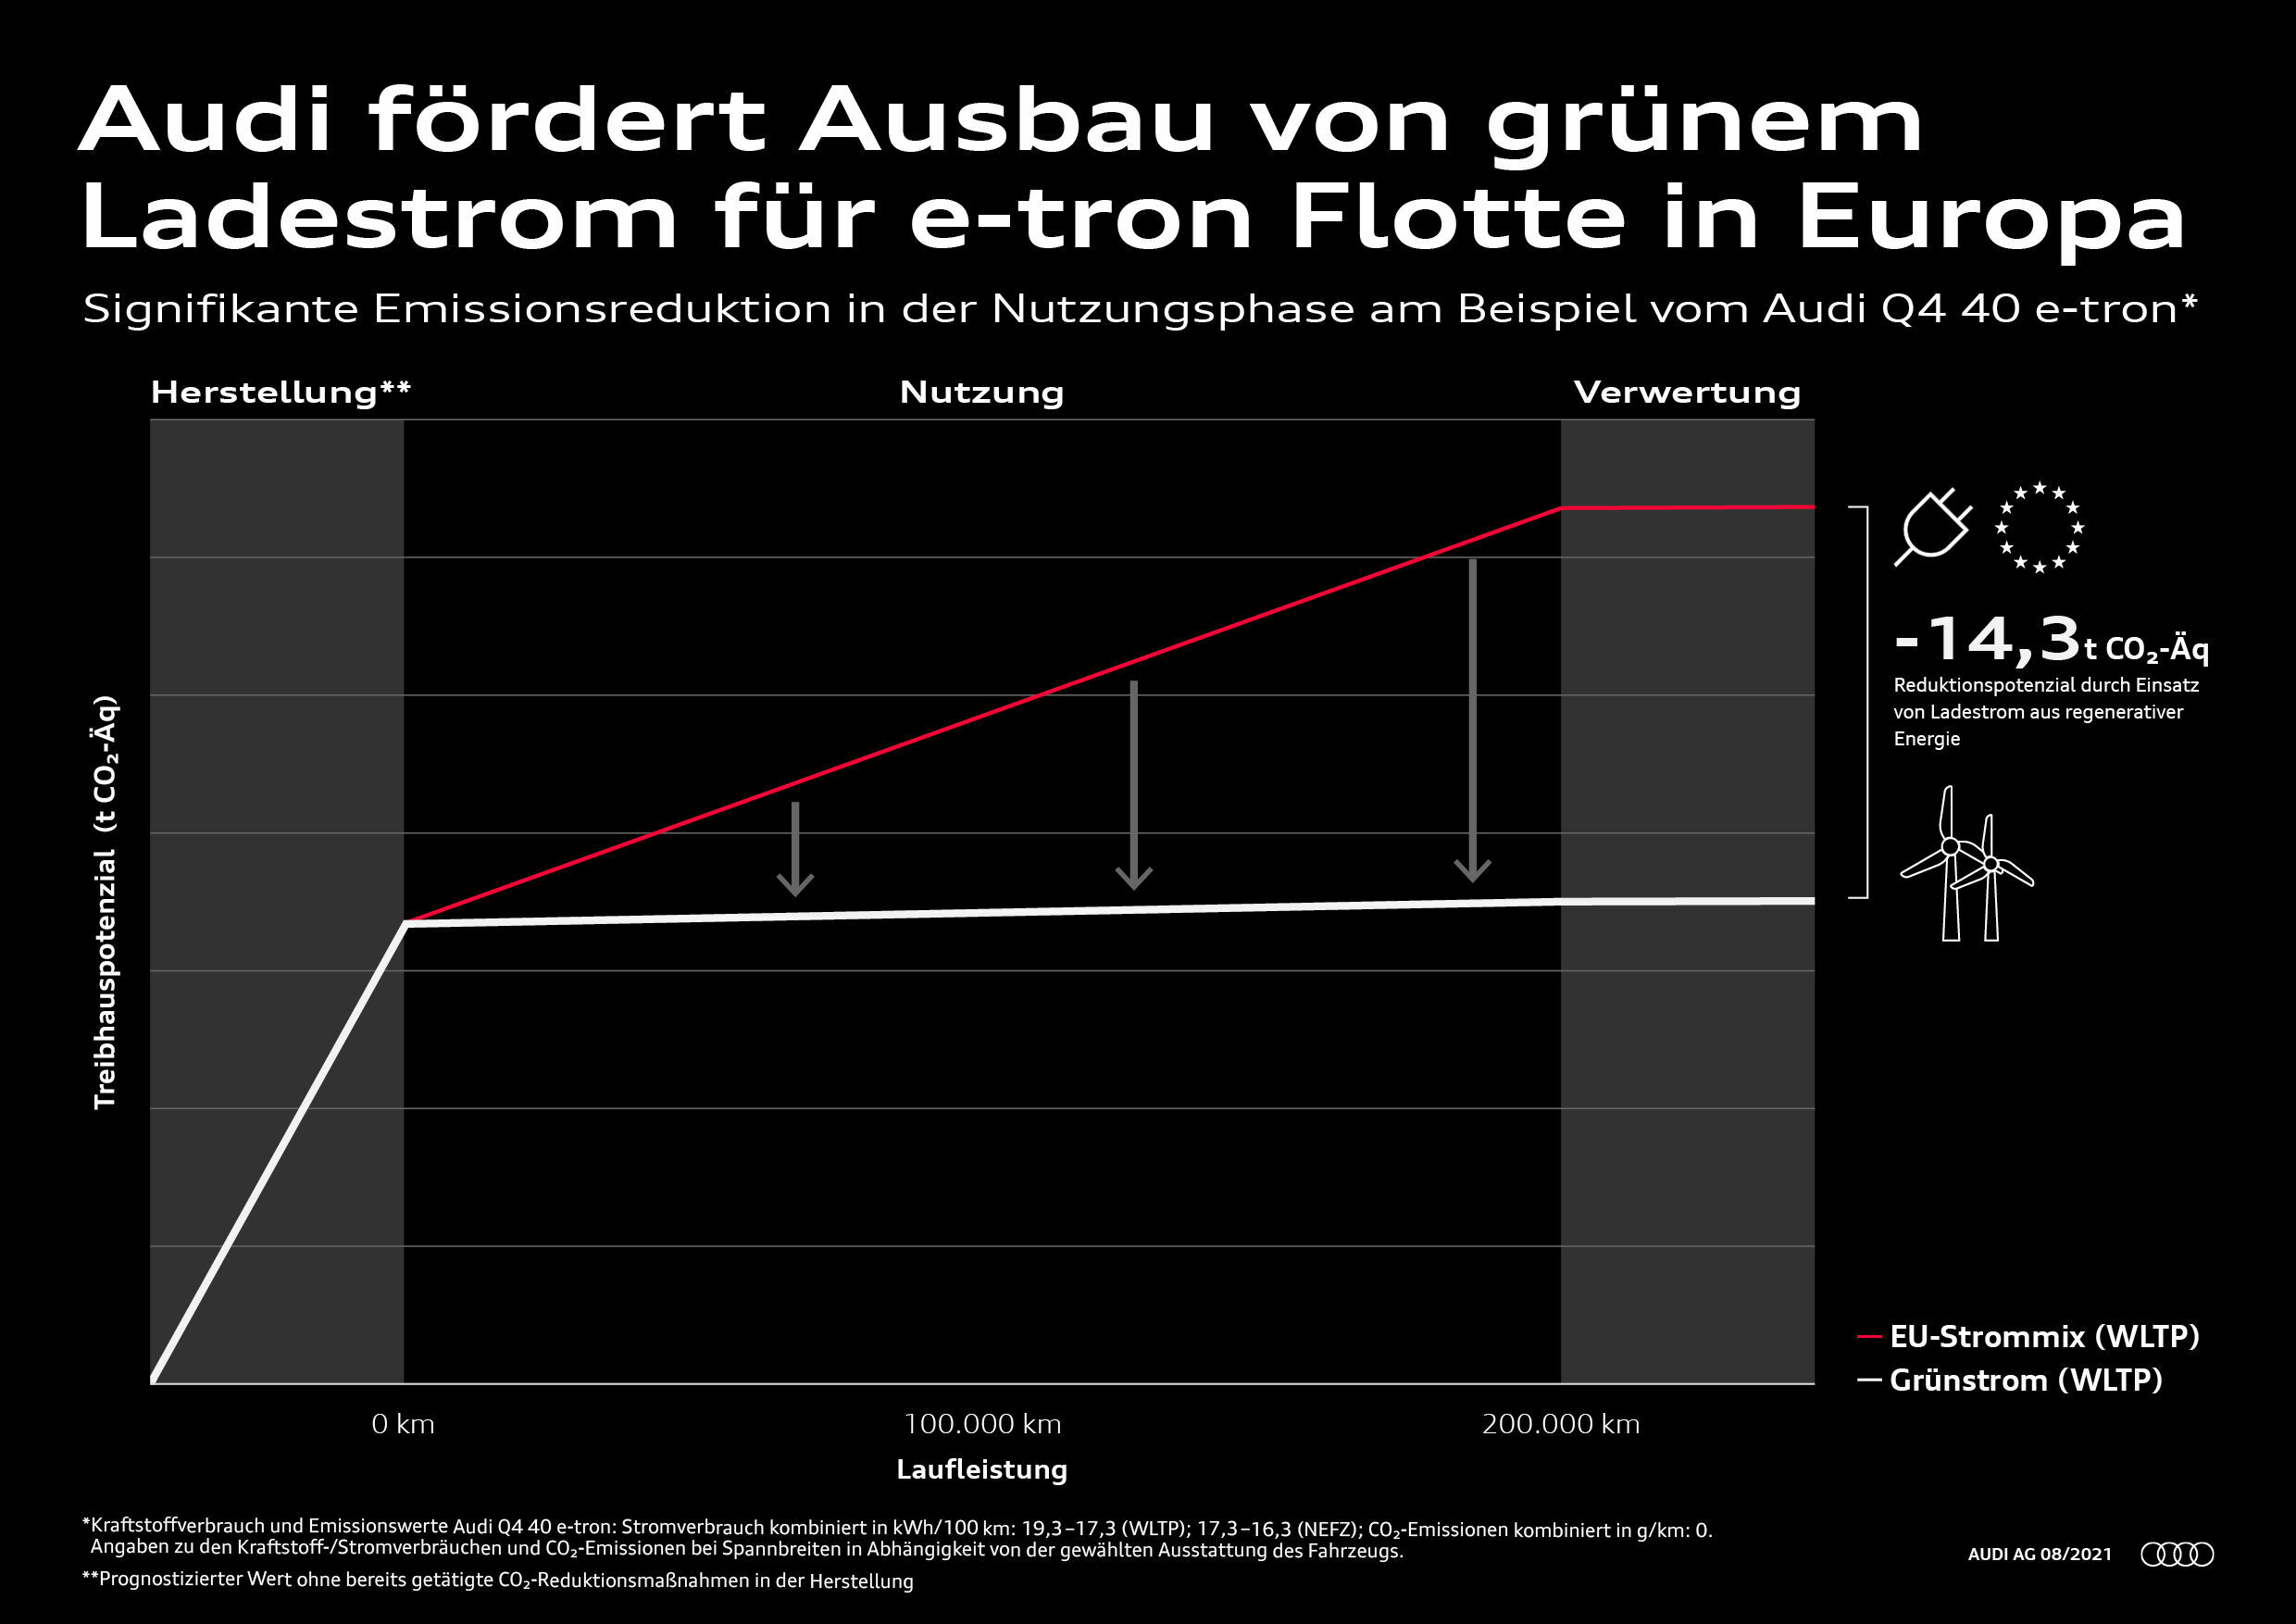 Audi fördert Ausbau von grünem Ladestrom für e-tron Flotte in Europa